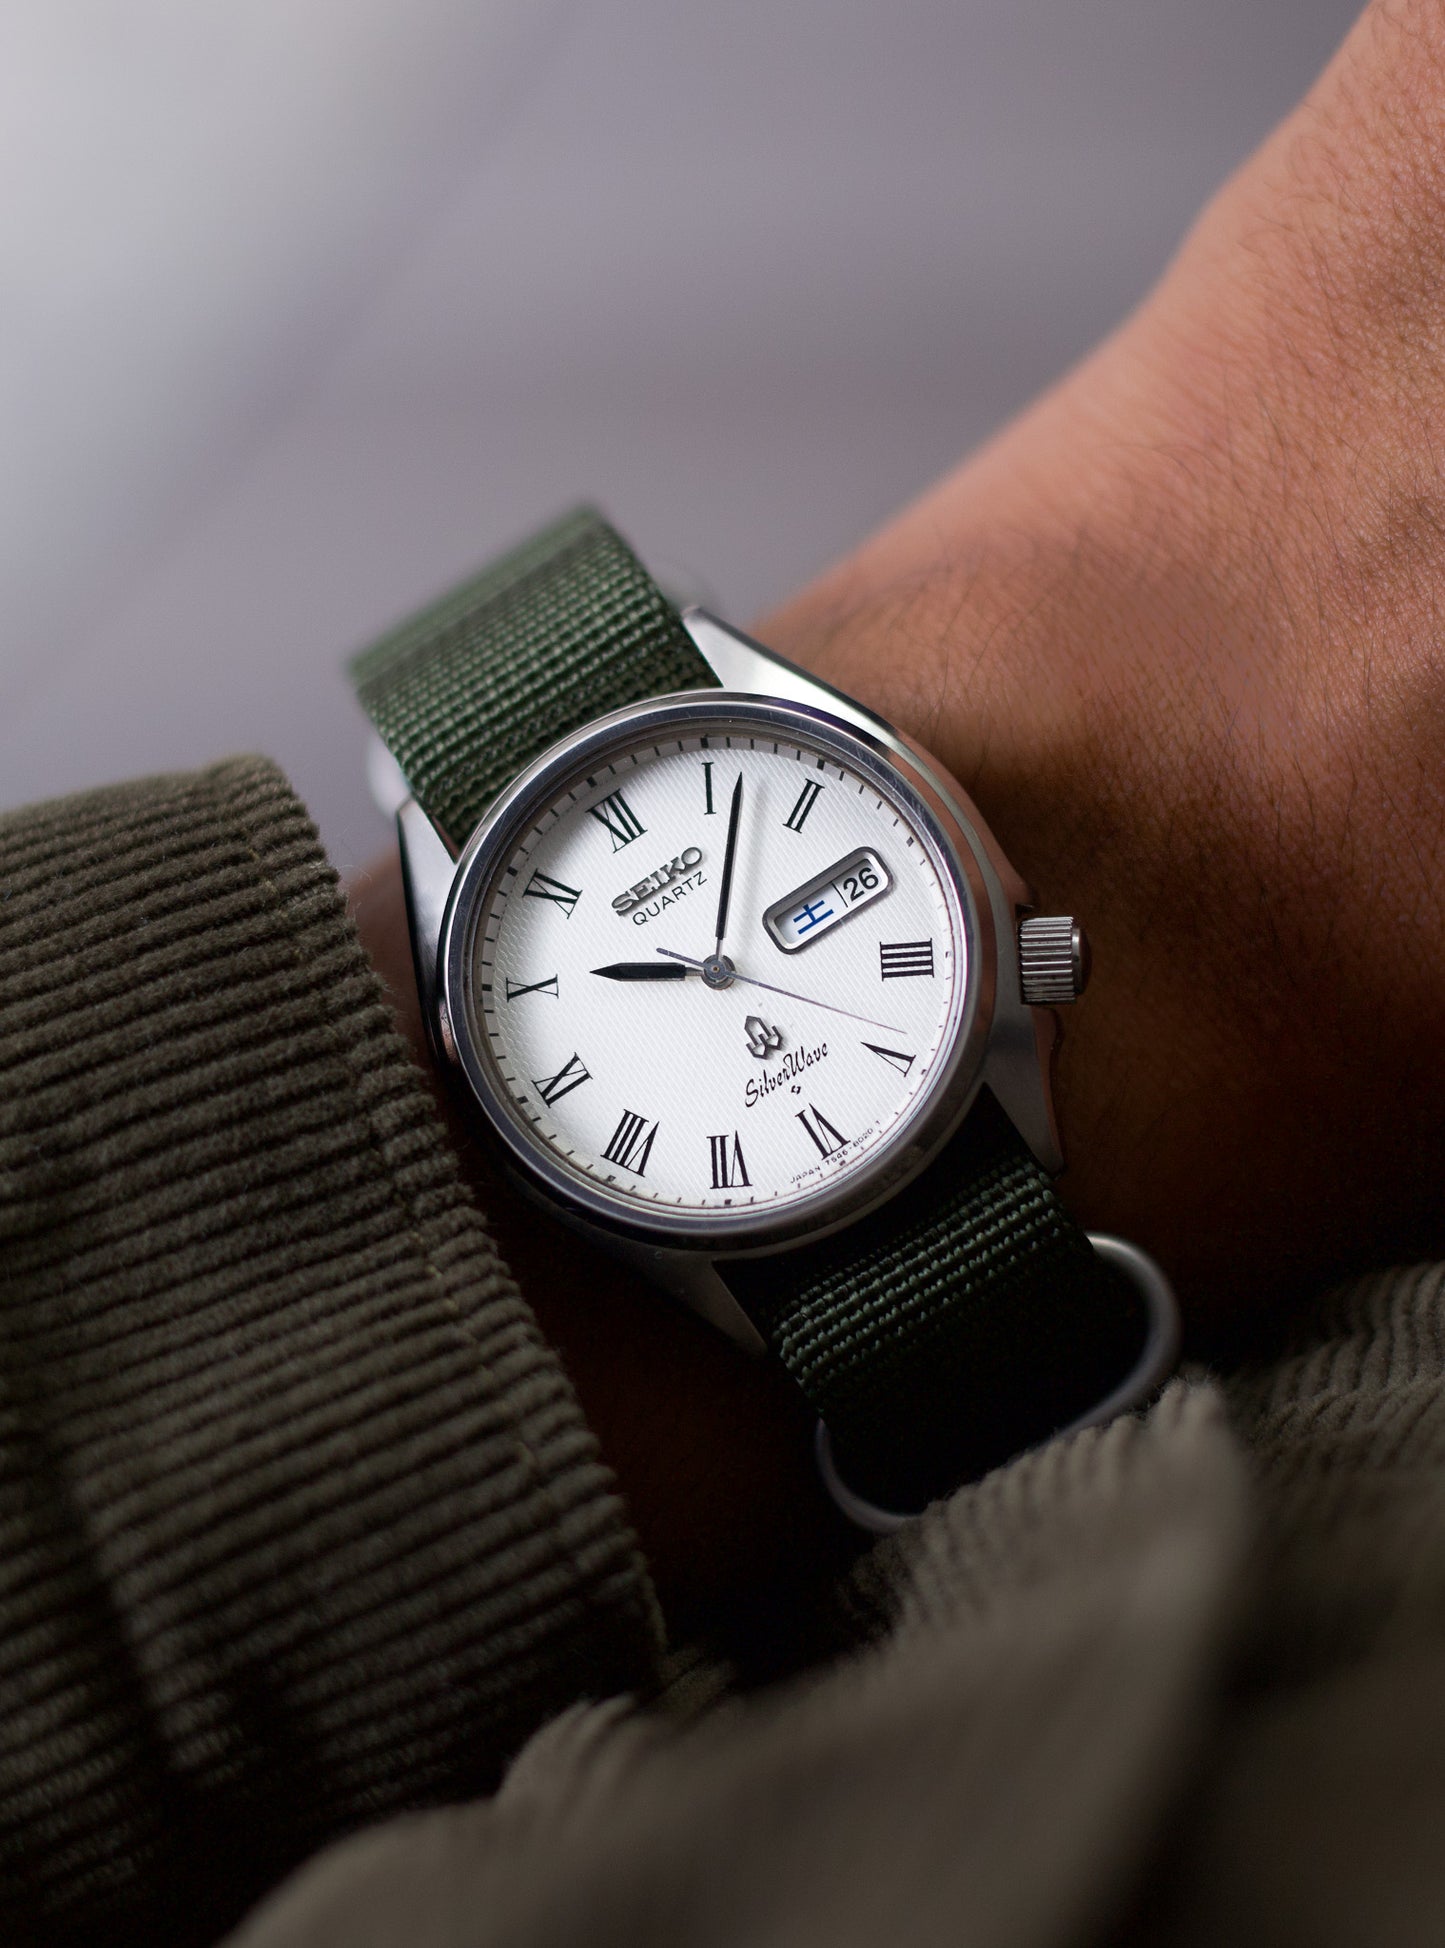 1977 Seiko Silverwave Roman Numerals Men's Wrist-Watch